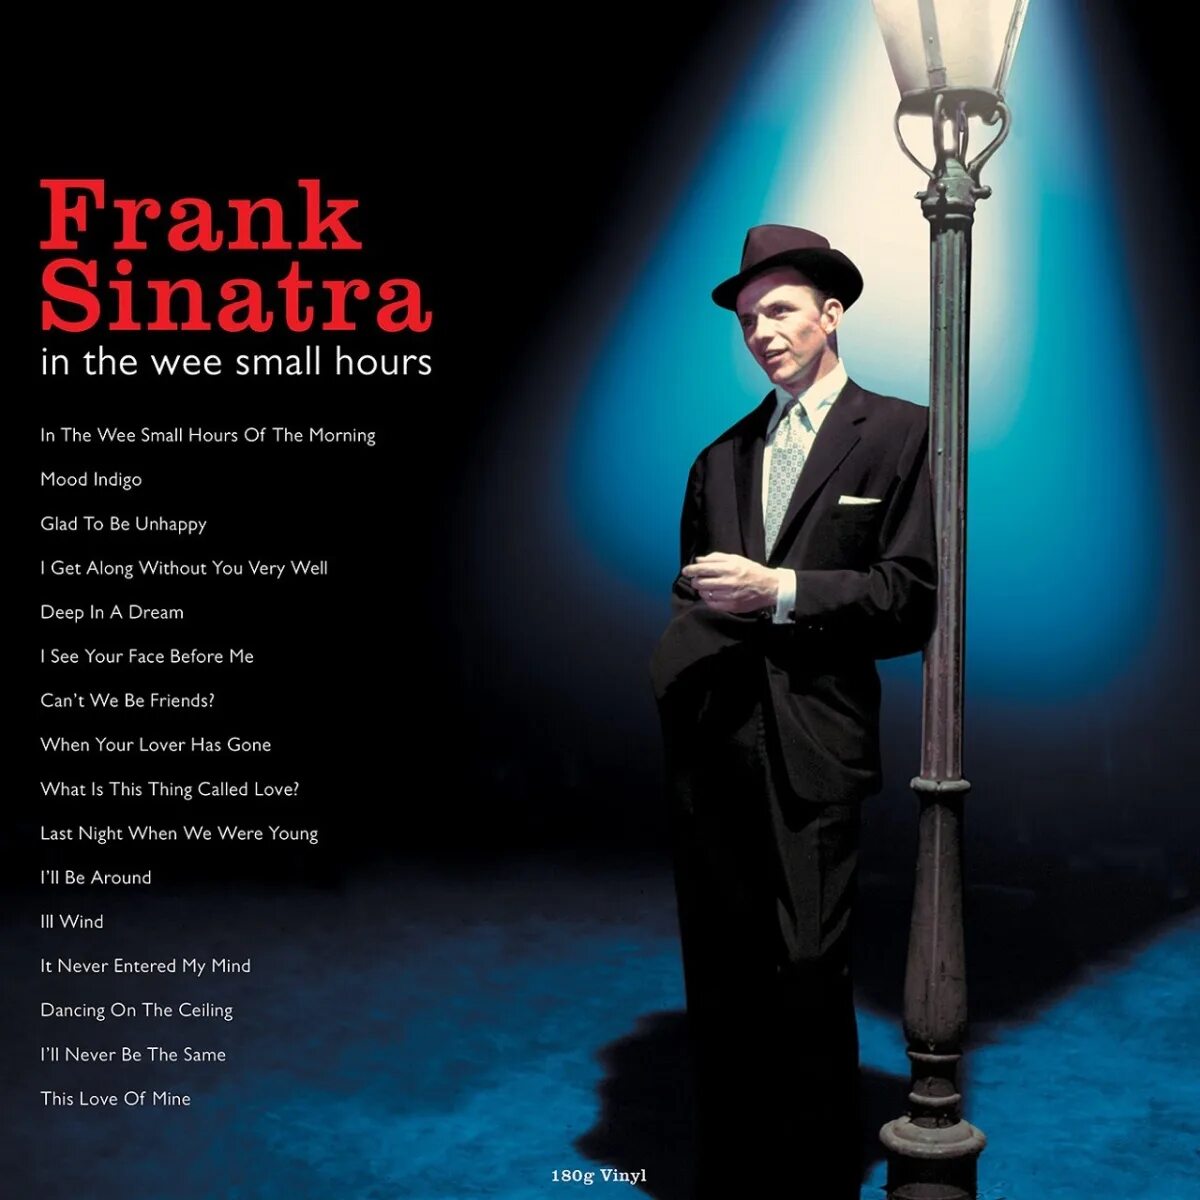 Виниловая пластинка Frank Sinatra. Фрэнк Синатра пластинка. In the Wee small hours Фрэнк Синатра. Виниловые пластинки Фрэнк Синатра. Small hours